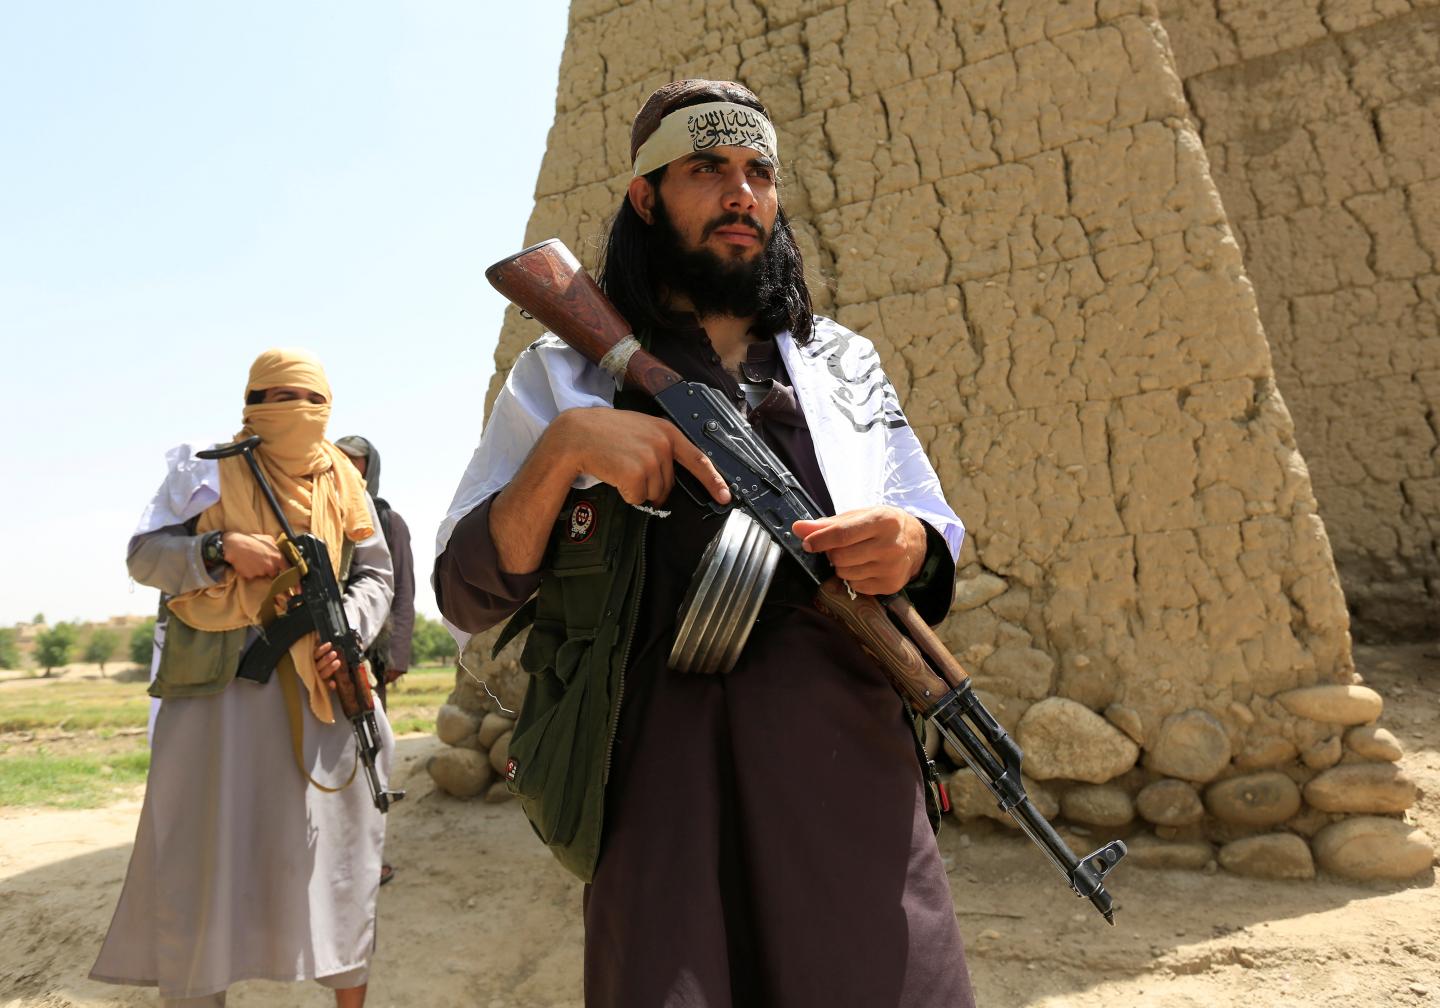 “Taliban” liderlərindən biri öldürülüb